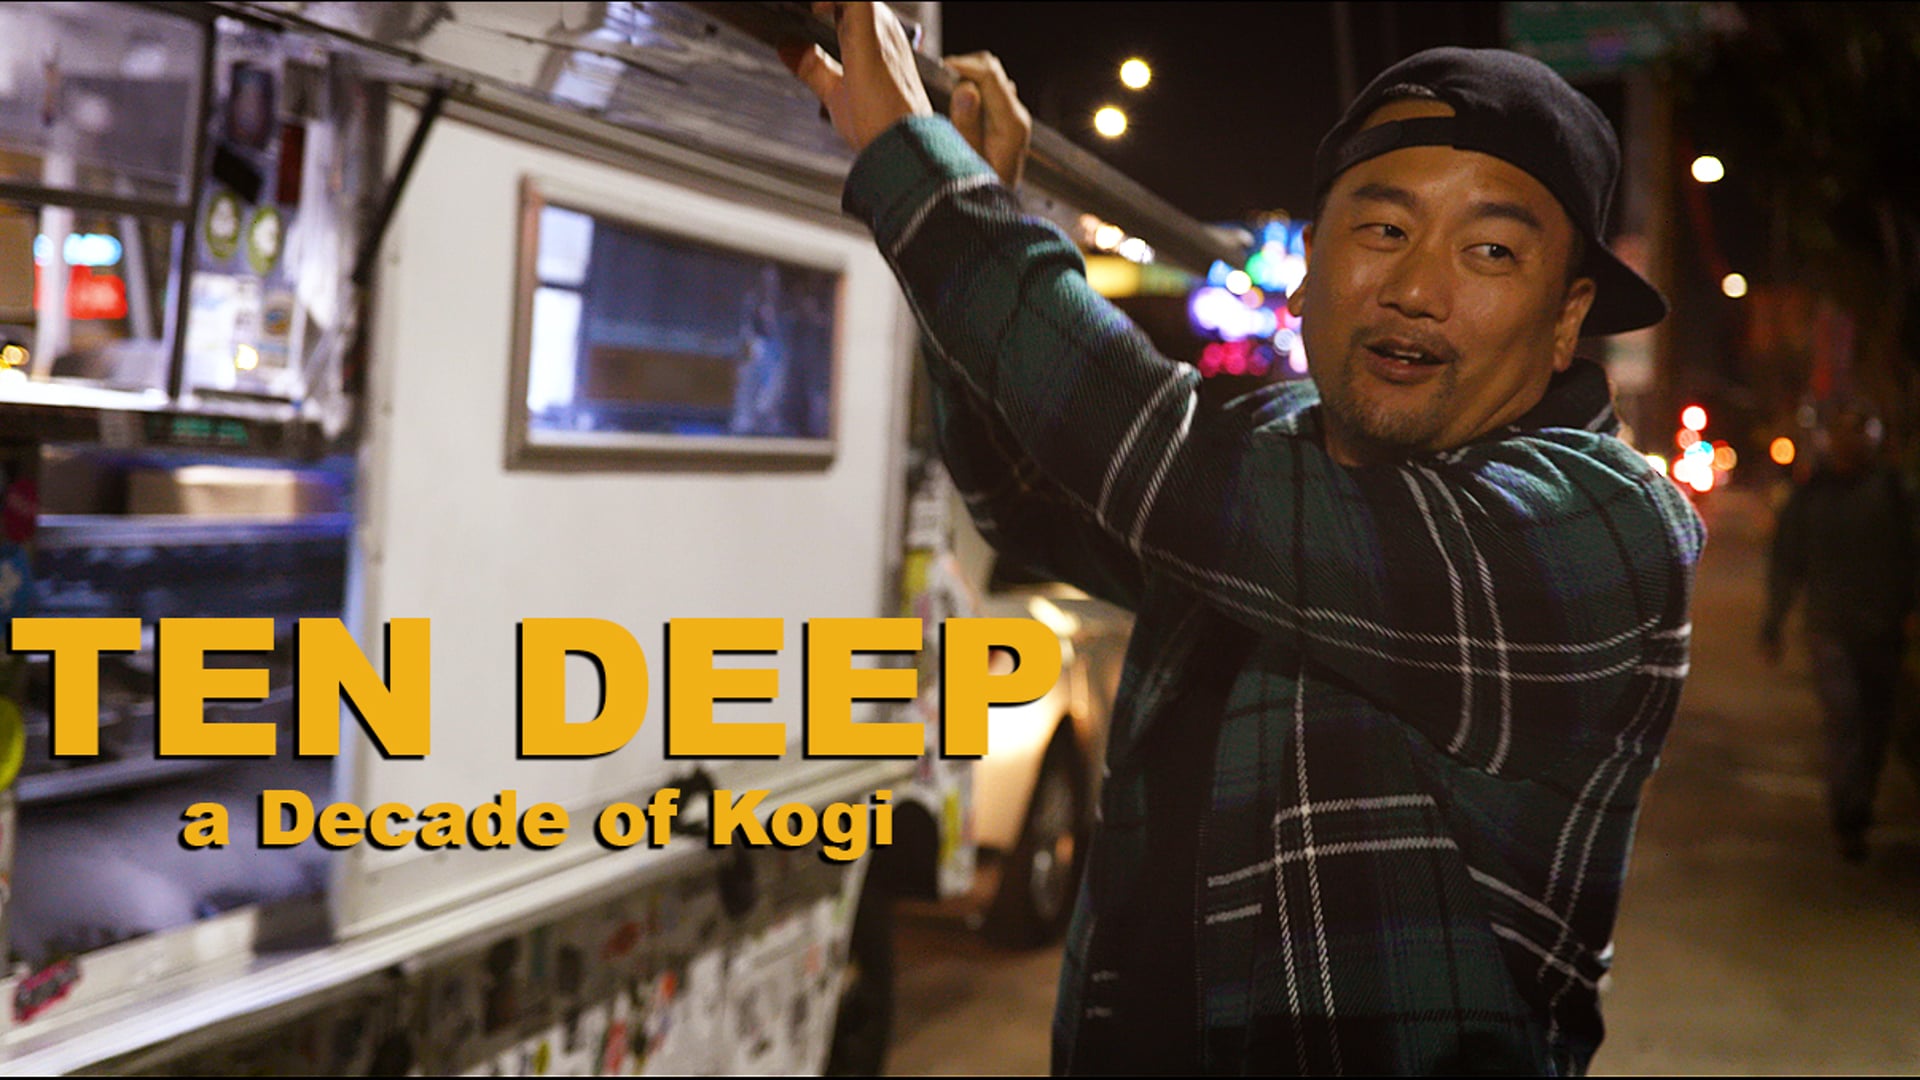 TEN DEEP: A Decade of Kogi